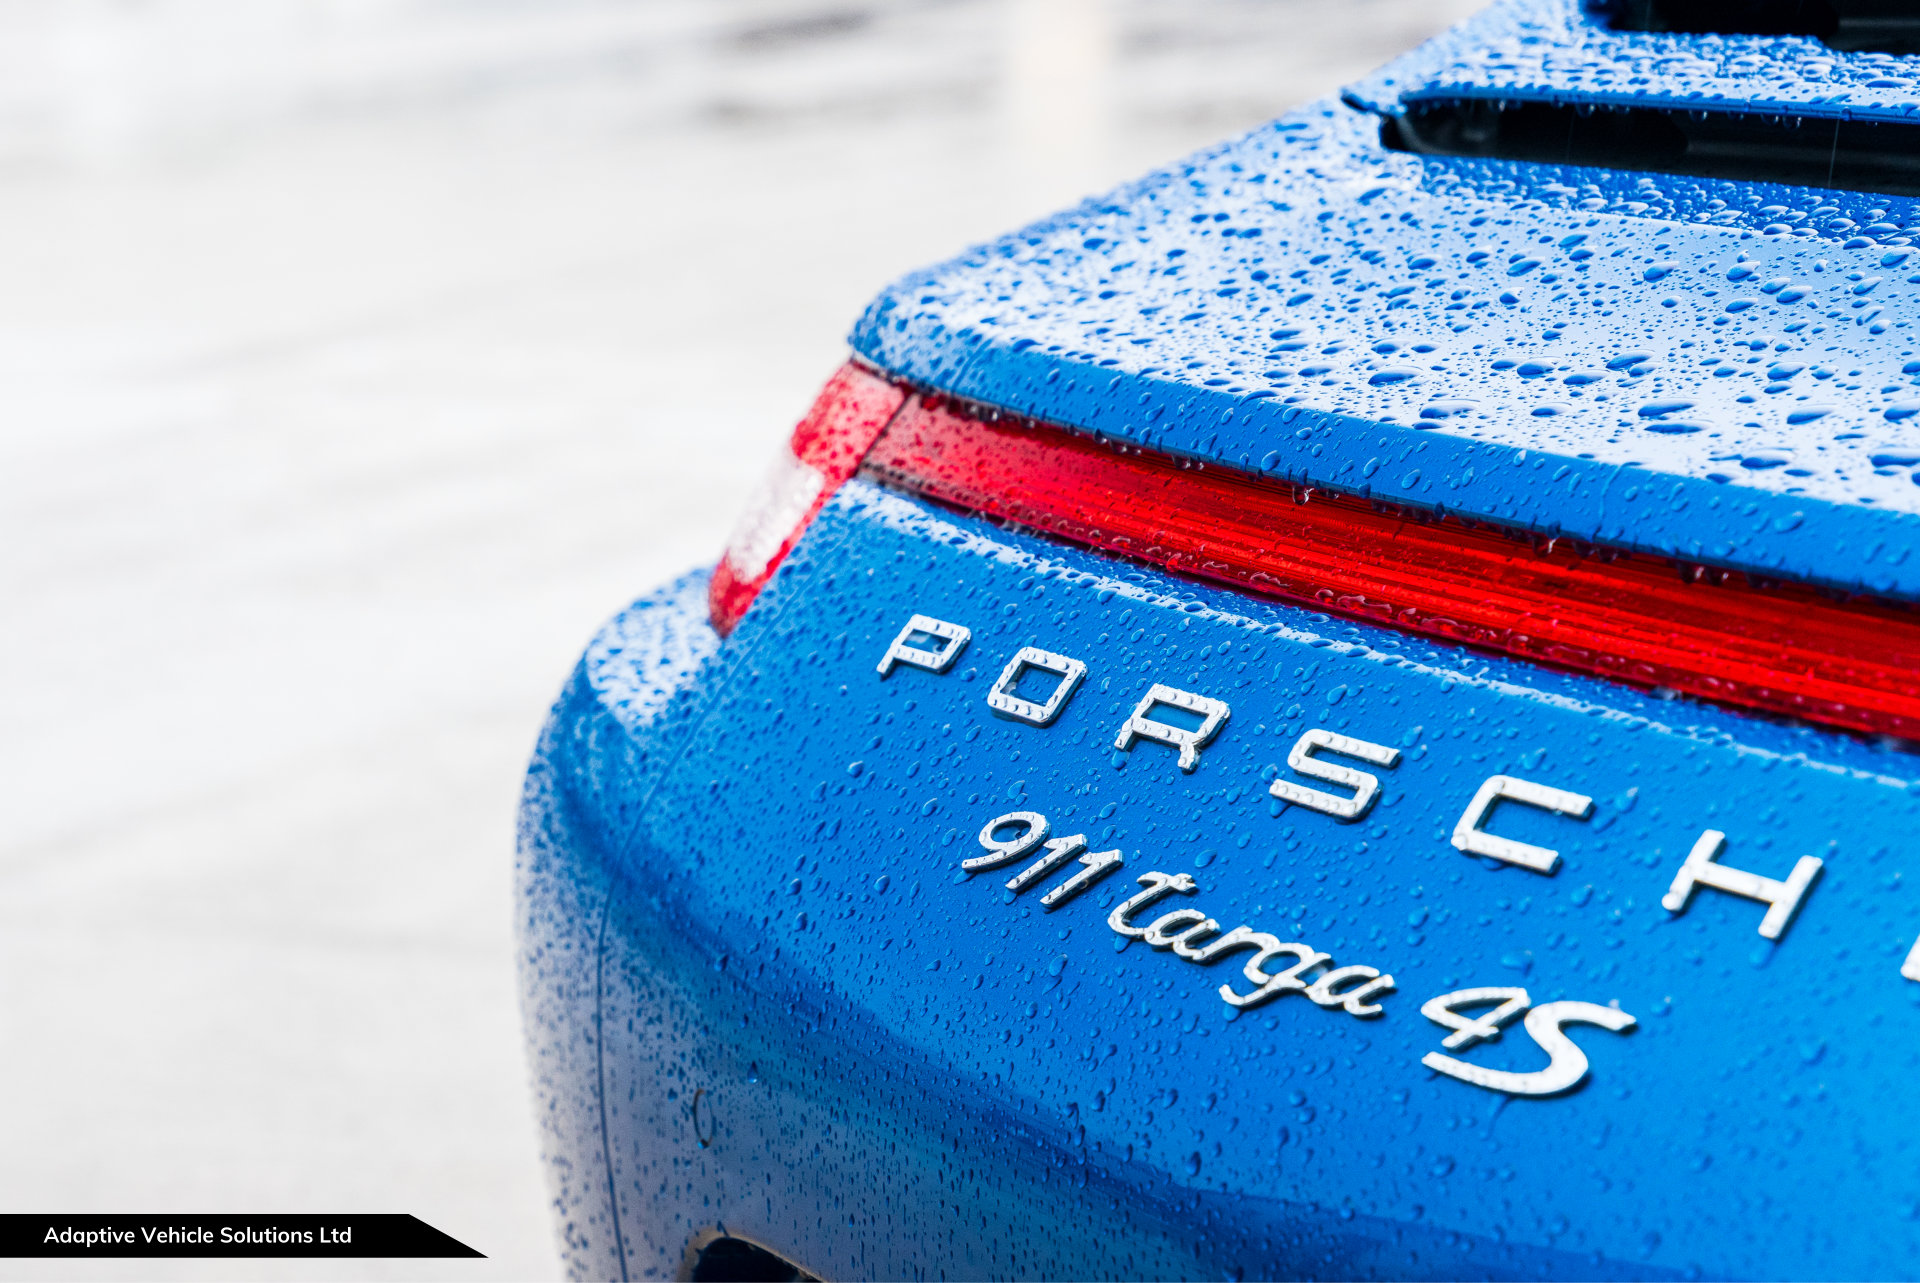 2014 Porsche 911 991 Targa 4S Sapphire Blue rear view